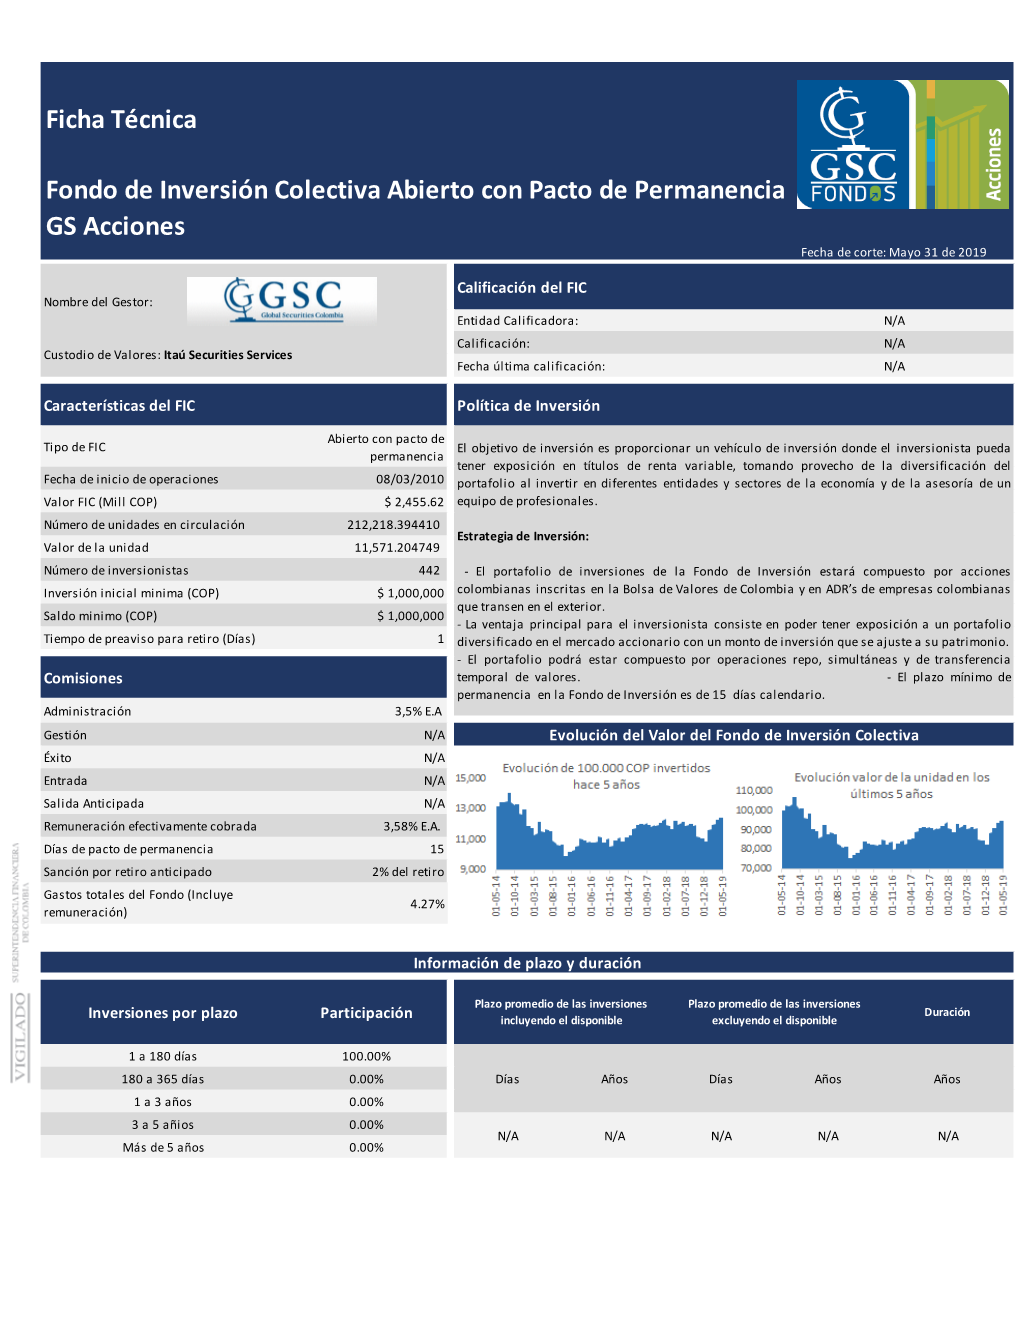 GS Acciones Ficha Técnica Fondo De Inversión Colectiva Abierto Con Pacto De Permanencia